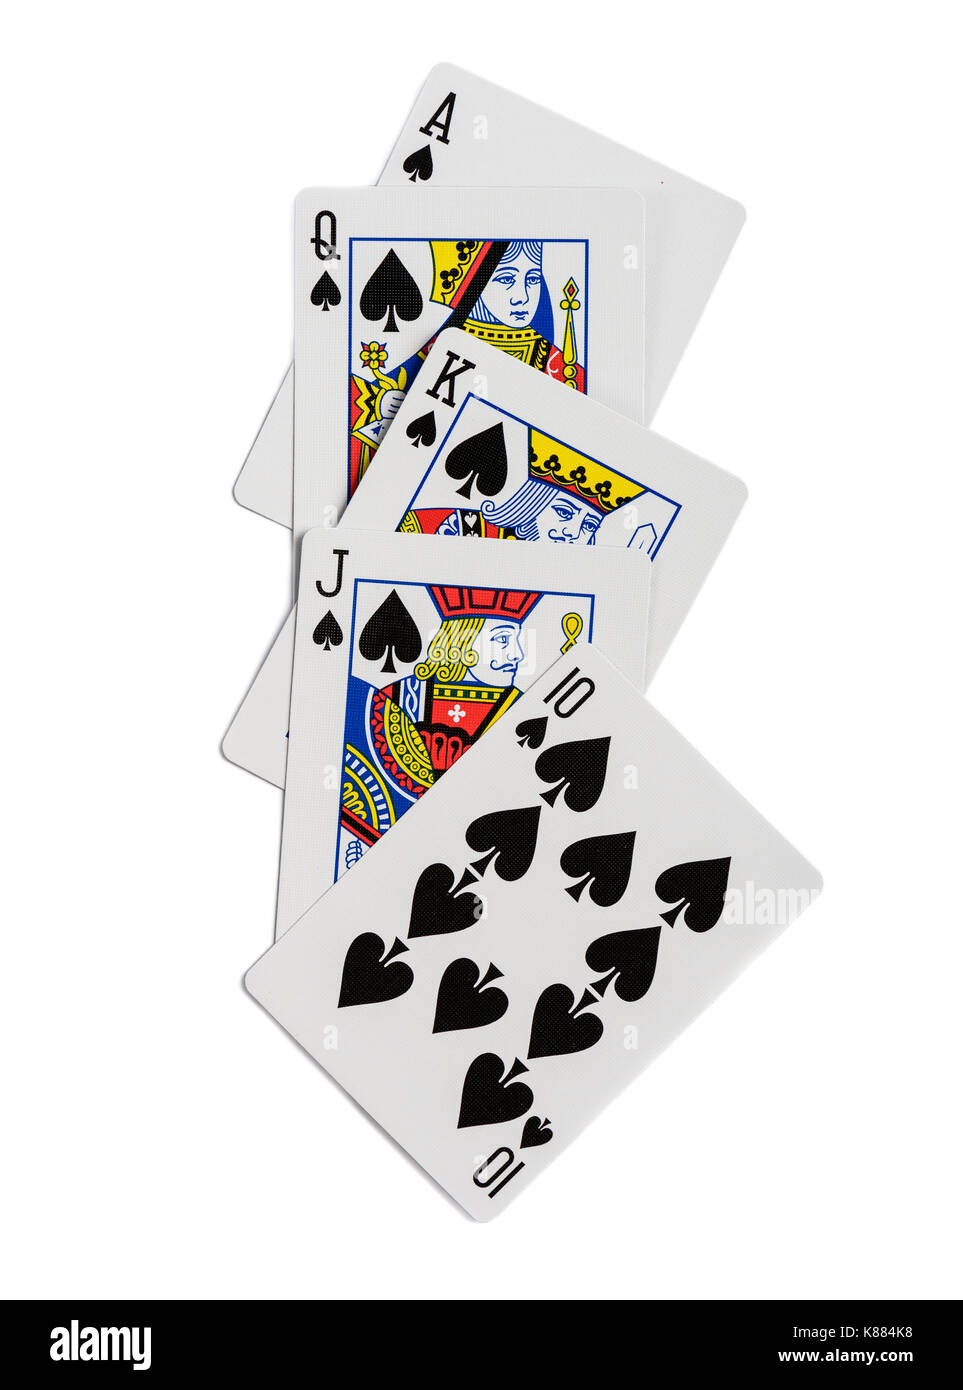 Combinaison de cartes à jouer pique poker casino conviennent. isolé sur fond blanc Banque D'Images